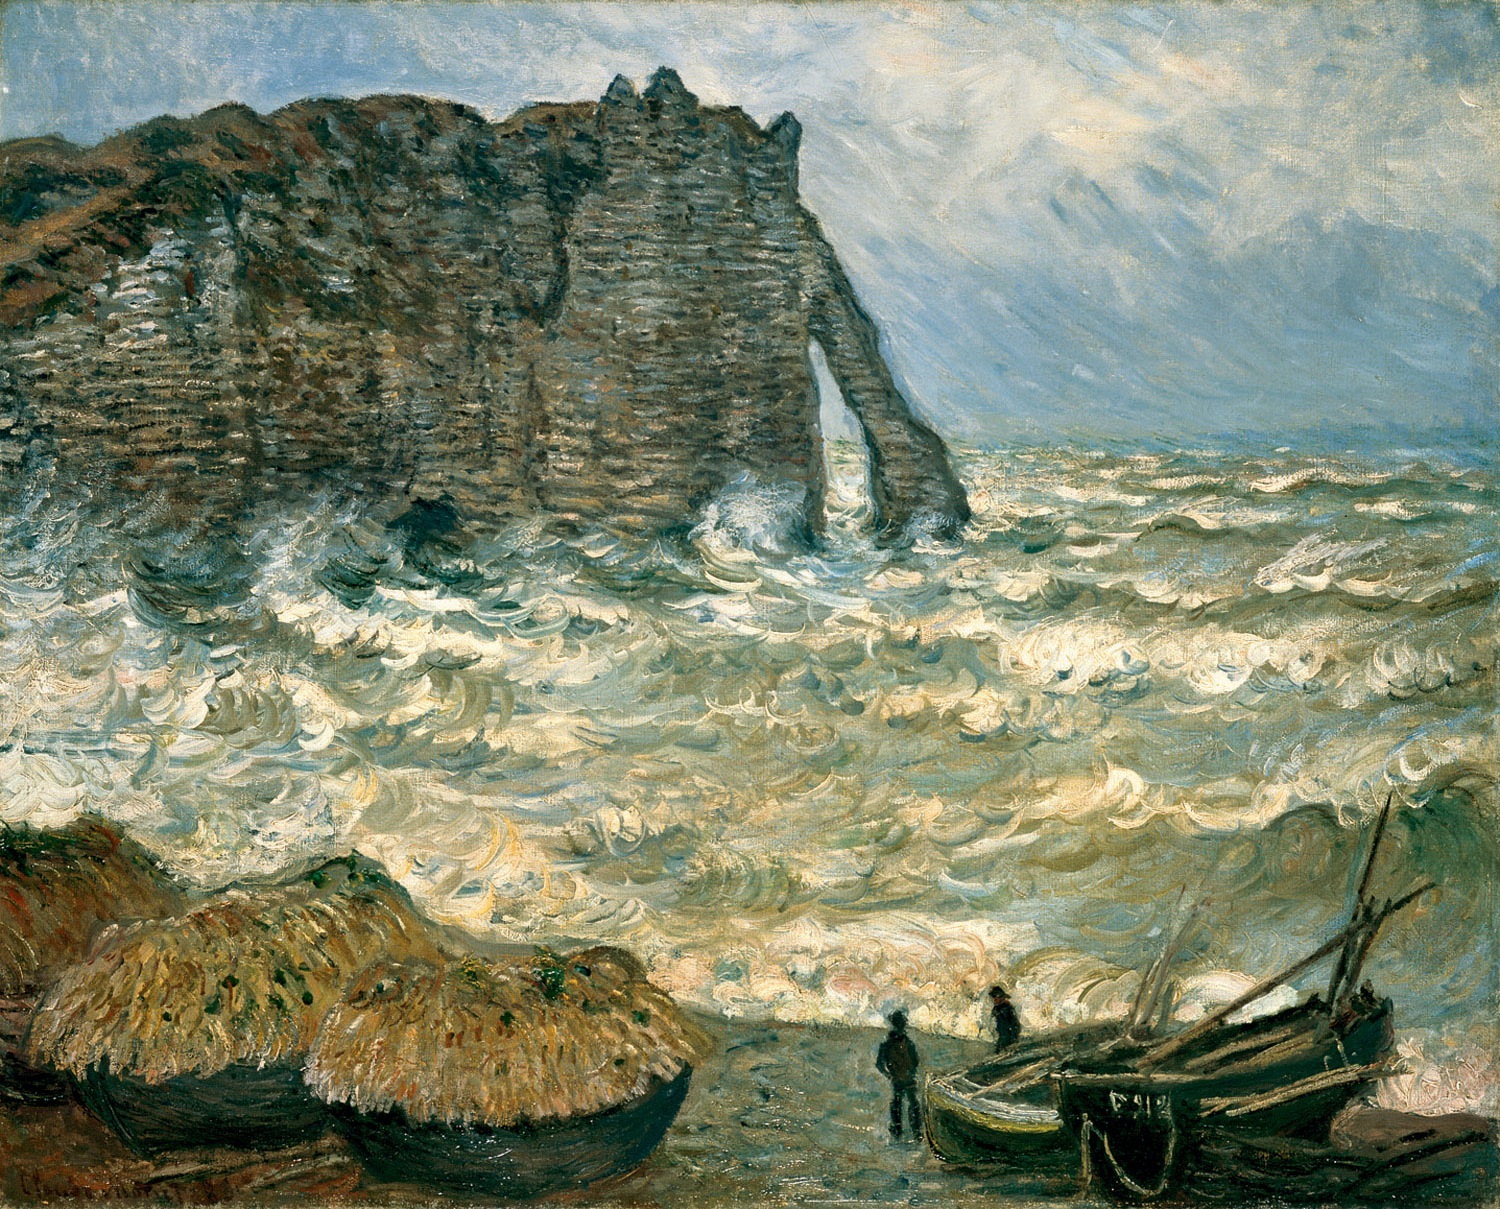 埃特尔塔的猛烈之海 by 克劳德· 莫奈 - 1883 - 81 x 100 cm 